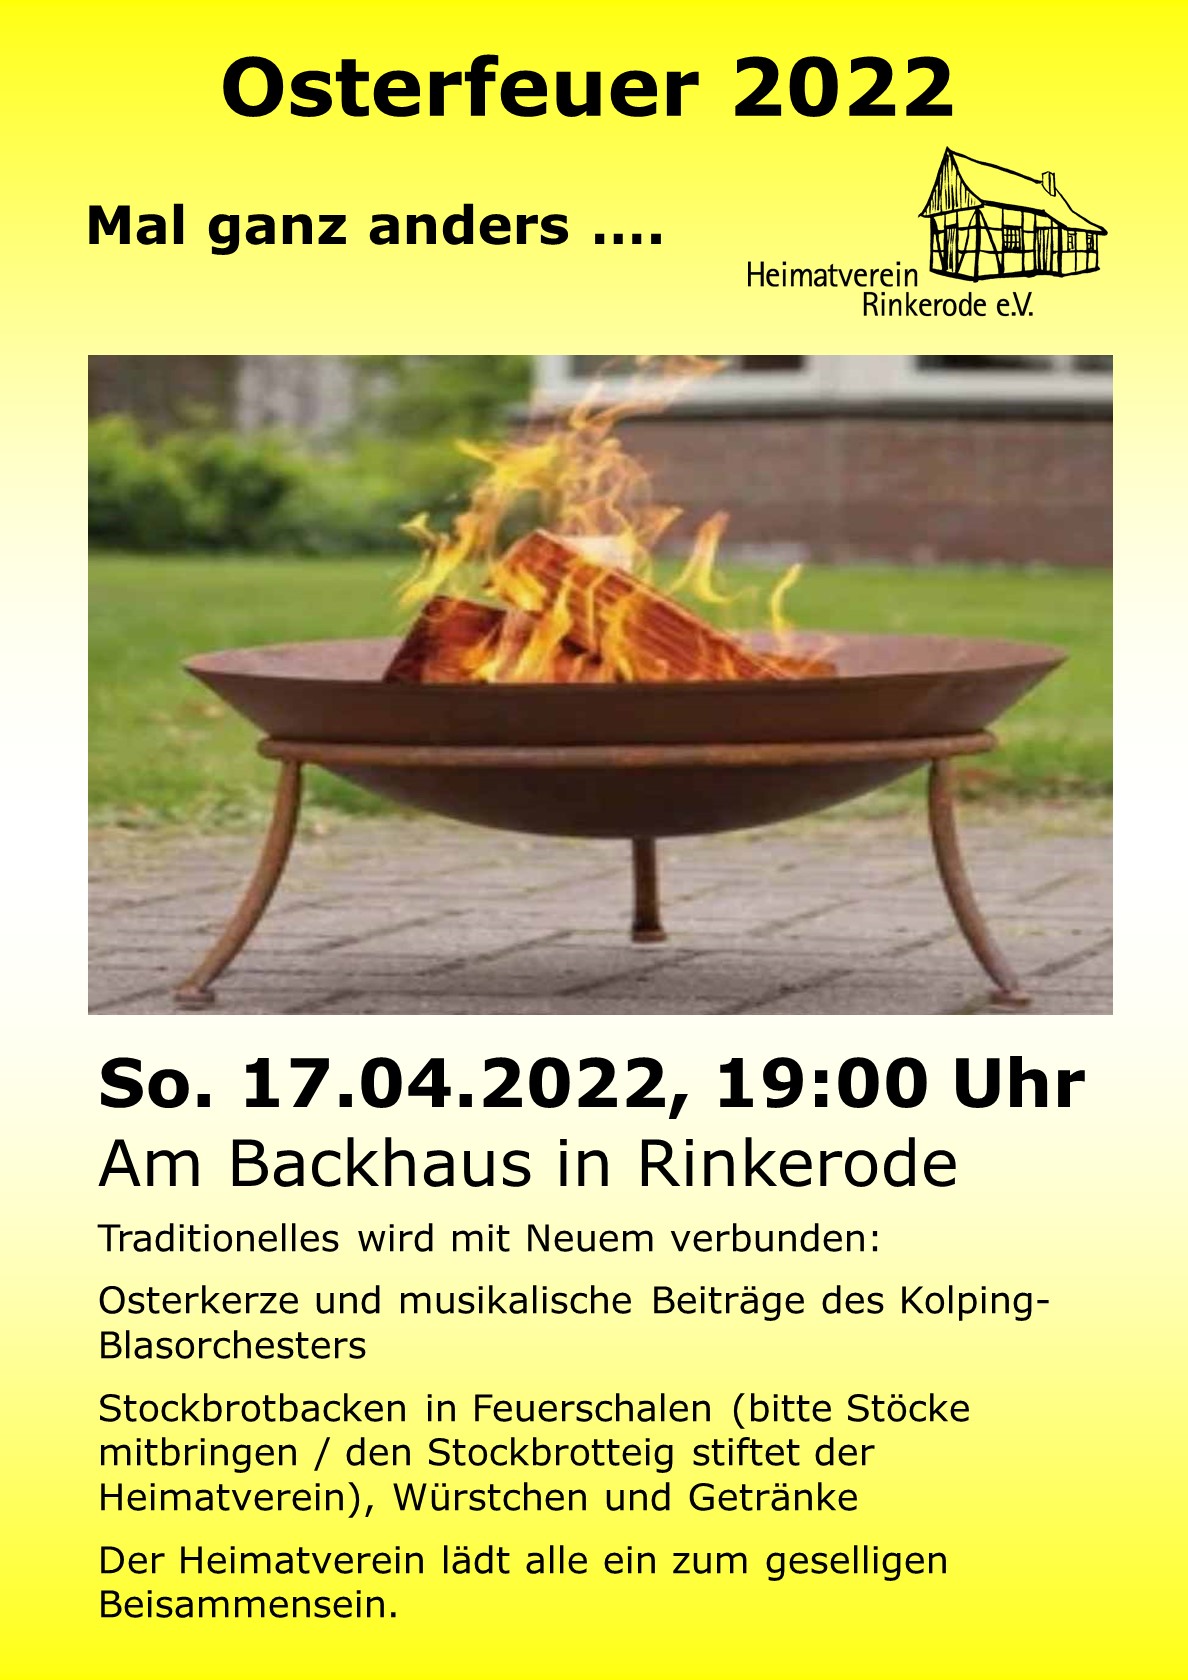 Plakat zum Osterfeuer des Heimatvereins Rinkerode 2022